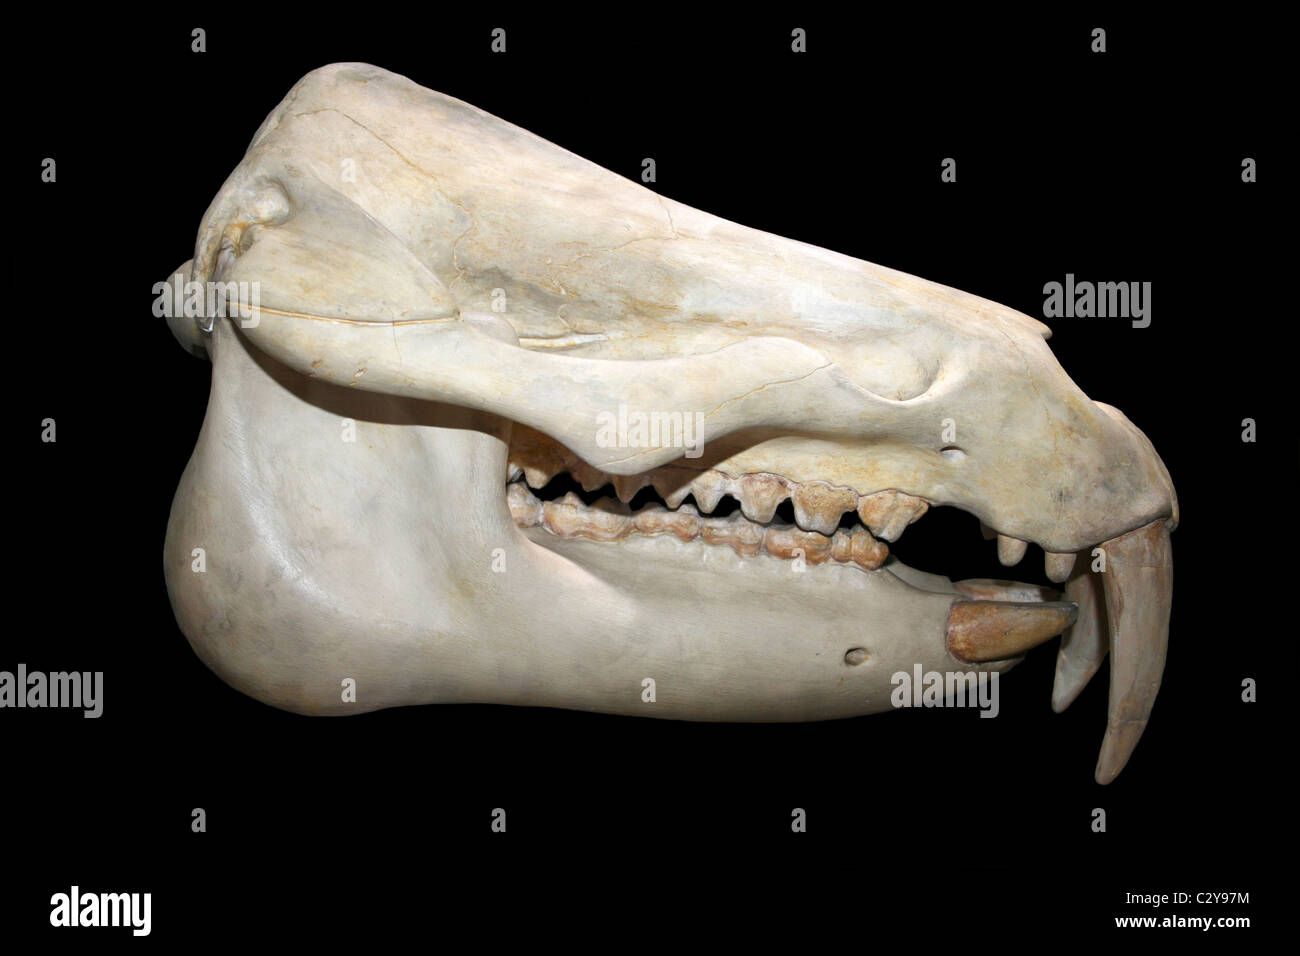 Schädel von Moeritherium, einen prähistorischen Säugetier im Zusammenhang mit den Elefanten, die während dem Eozän lebte Stockfoto